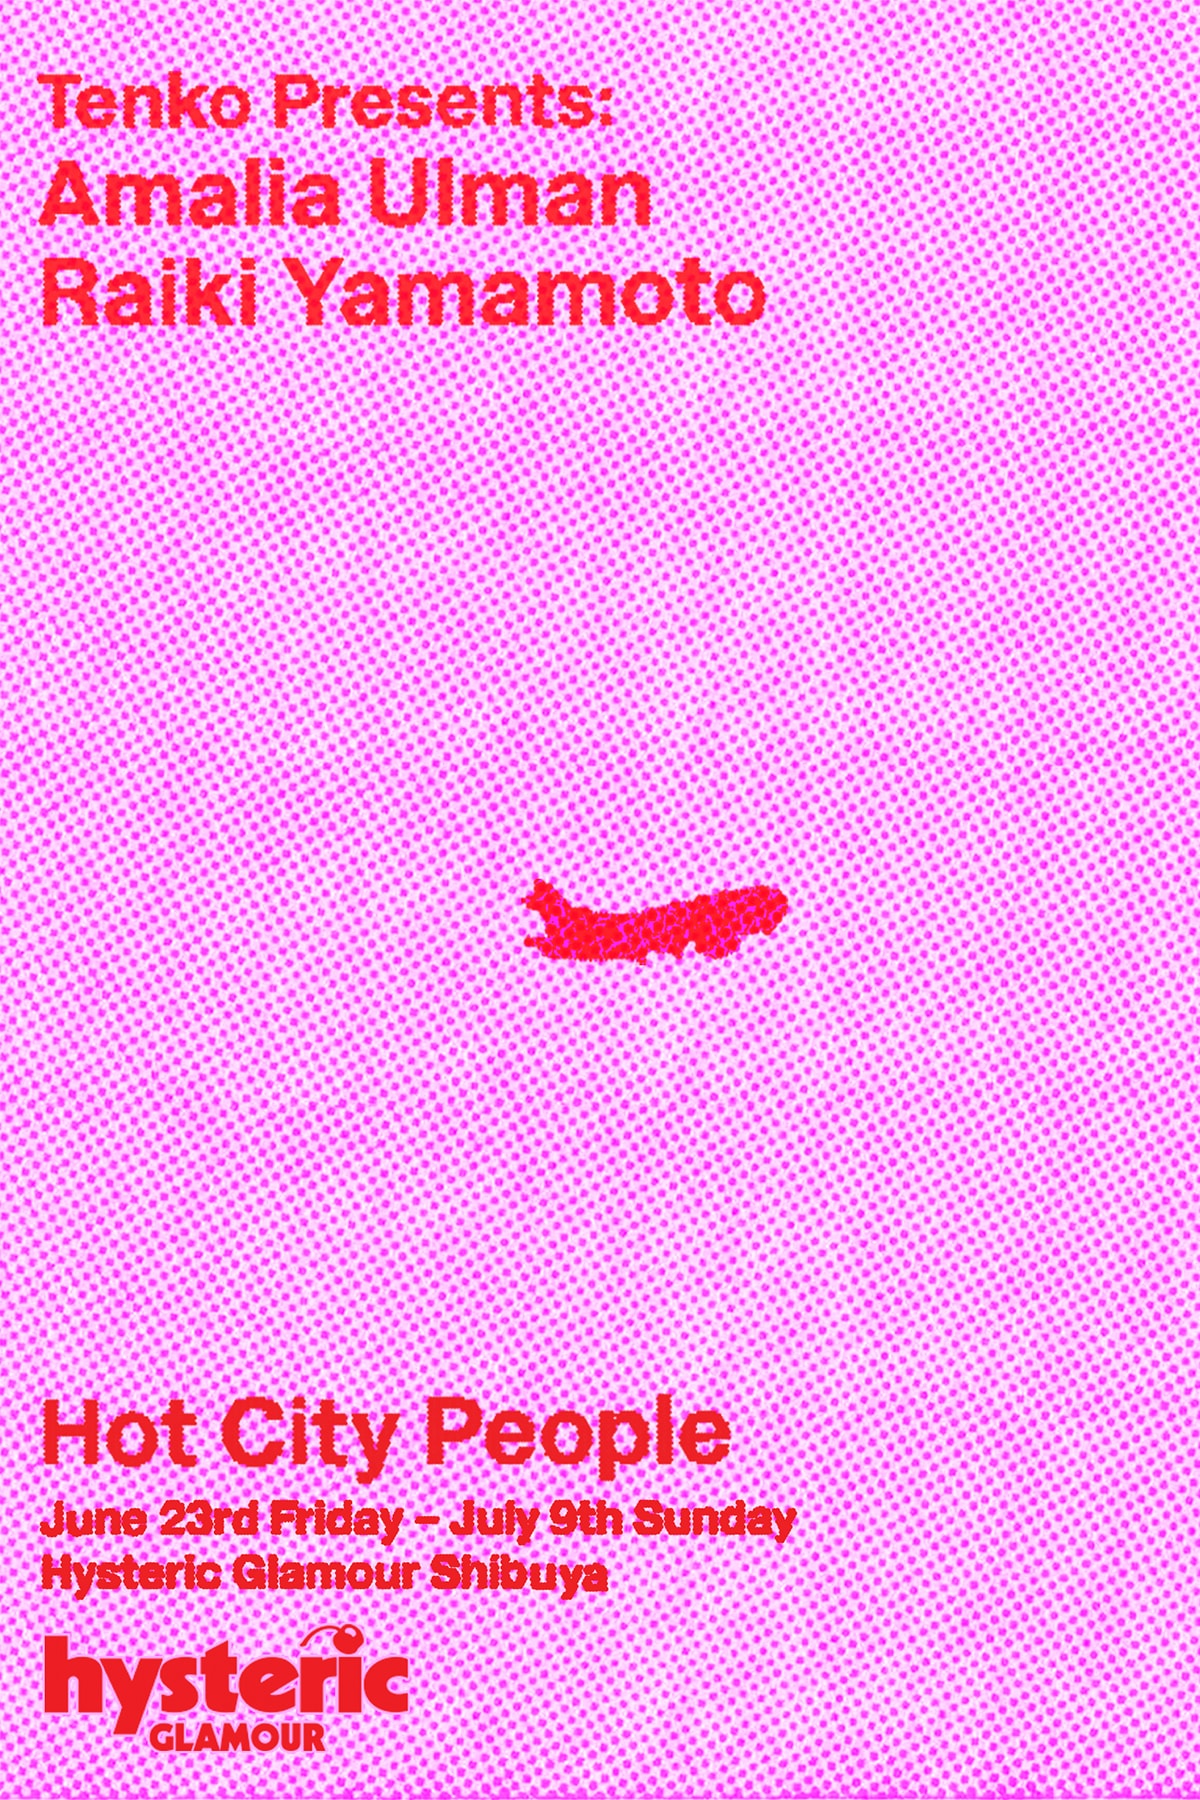 点子キュレーションによるアマリア・ウルマン & 靈樹の二人展が ヒステリックグラマー 渋谷で開催 HYSTERIC GLAMOUR SHIBUYA Tenko presents AMALIA ULMAN x RAIKI YAMAMOTO HOT CITY PEOPLE Exhibition info